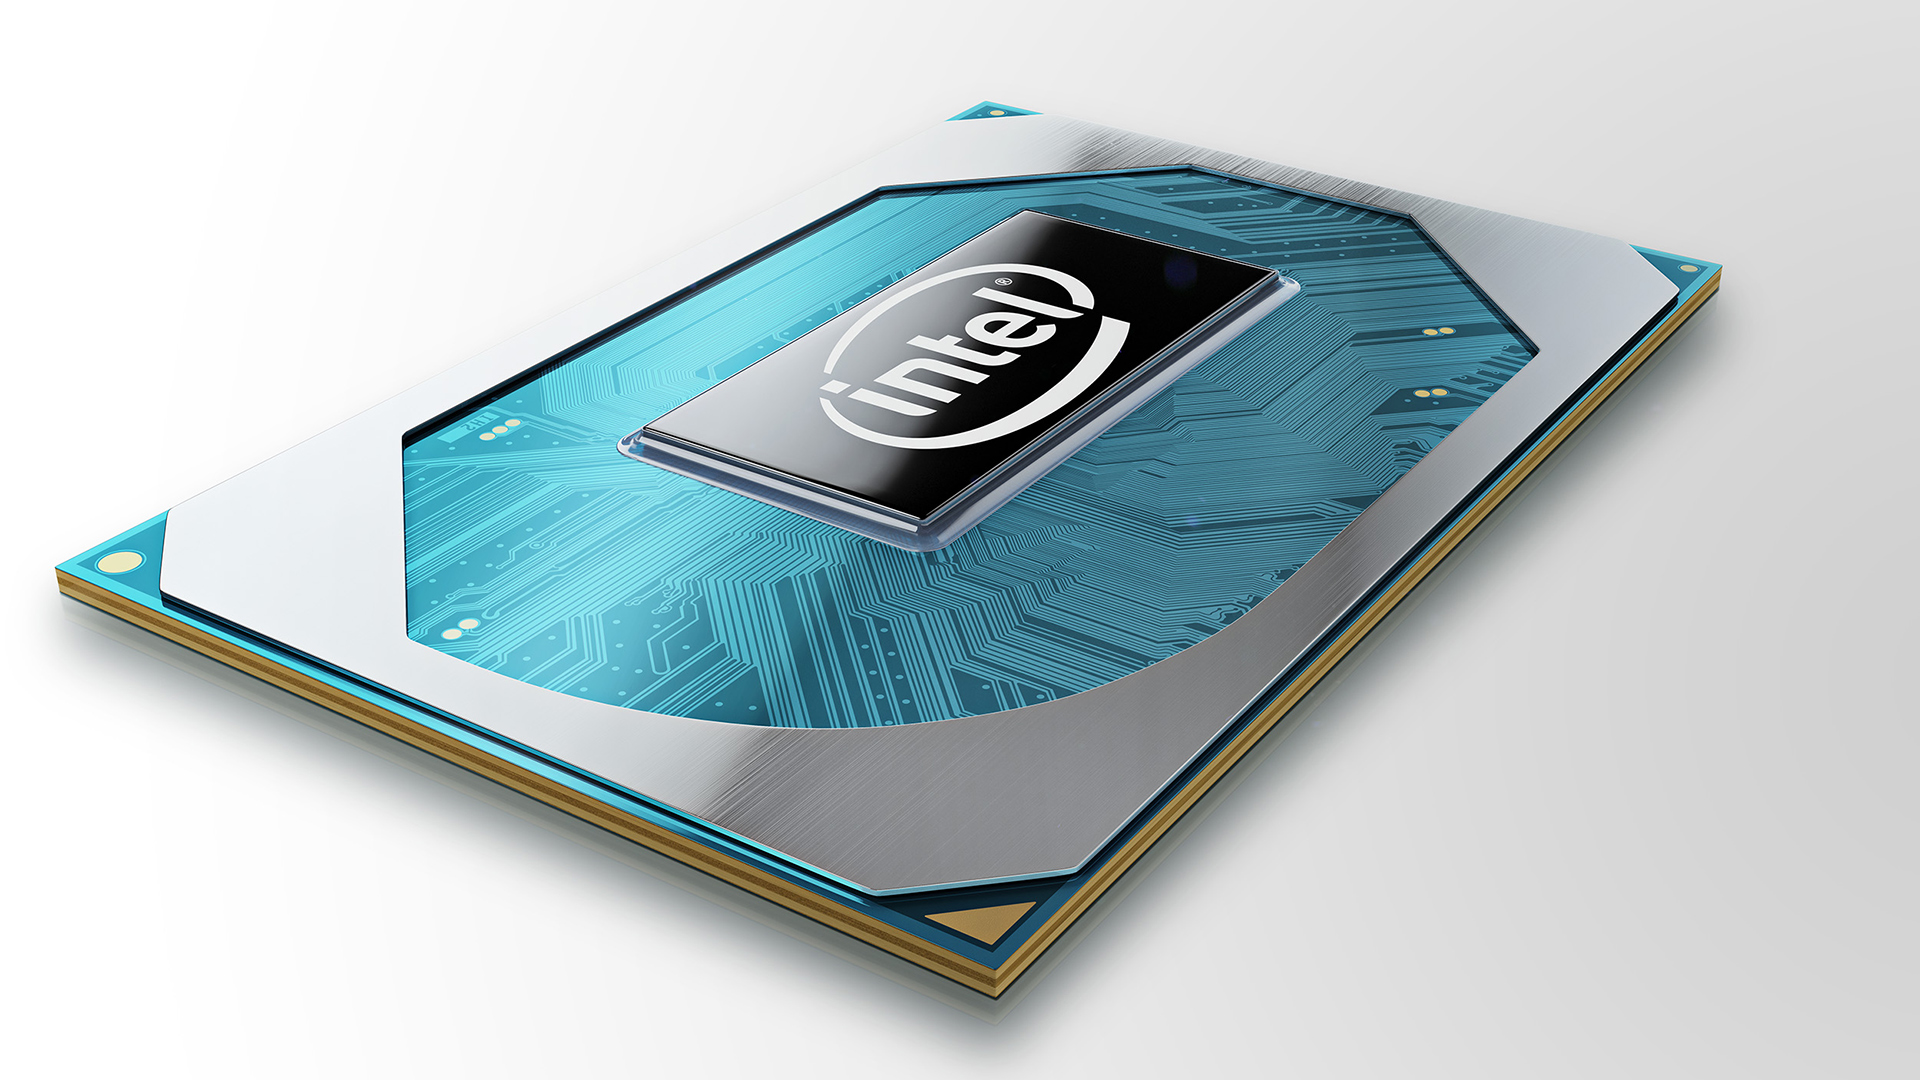 Intel Core i3-N305, Core i3-N300, Intel Processor N200 and Intel